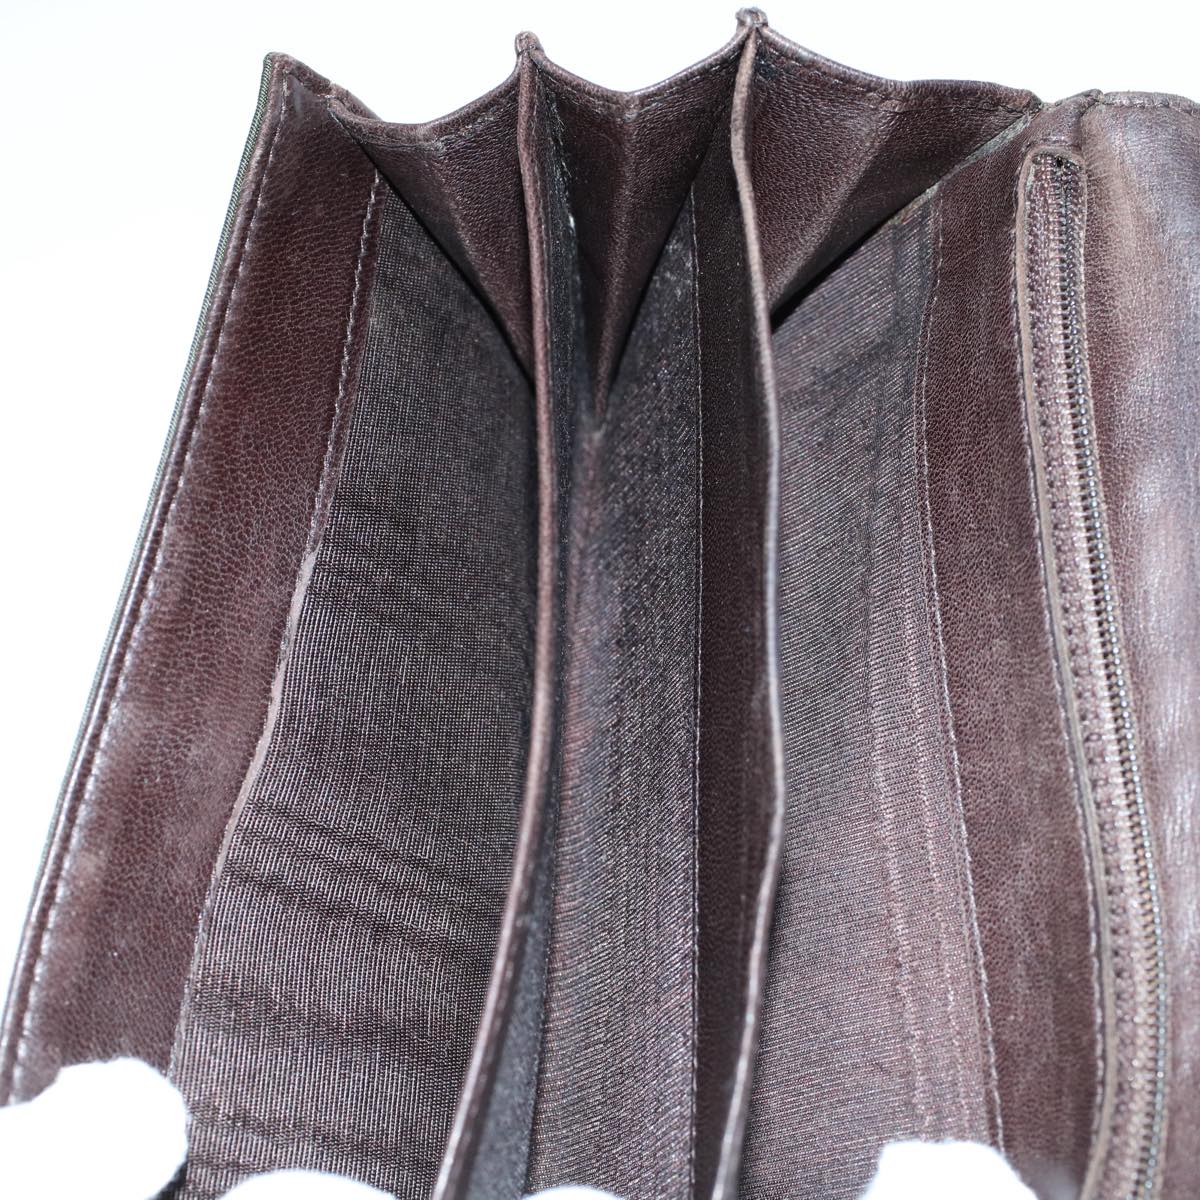 PRADA Wallet Leather nylon 4Set Black Brown Auth fm2988